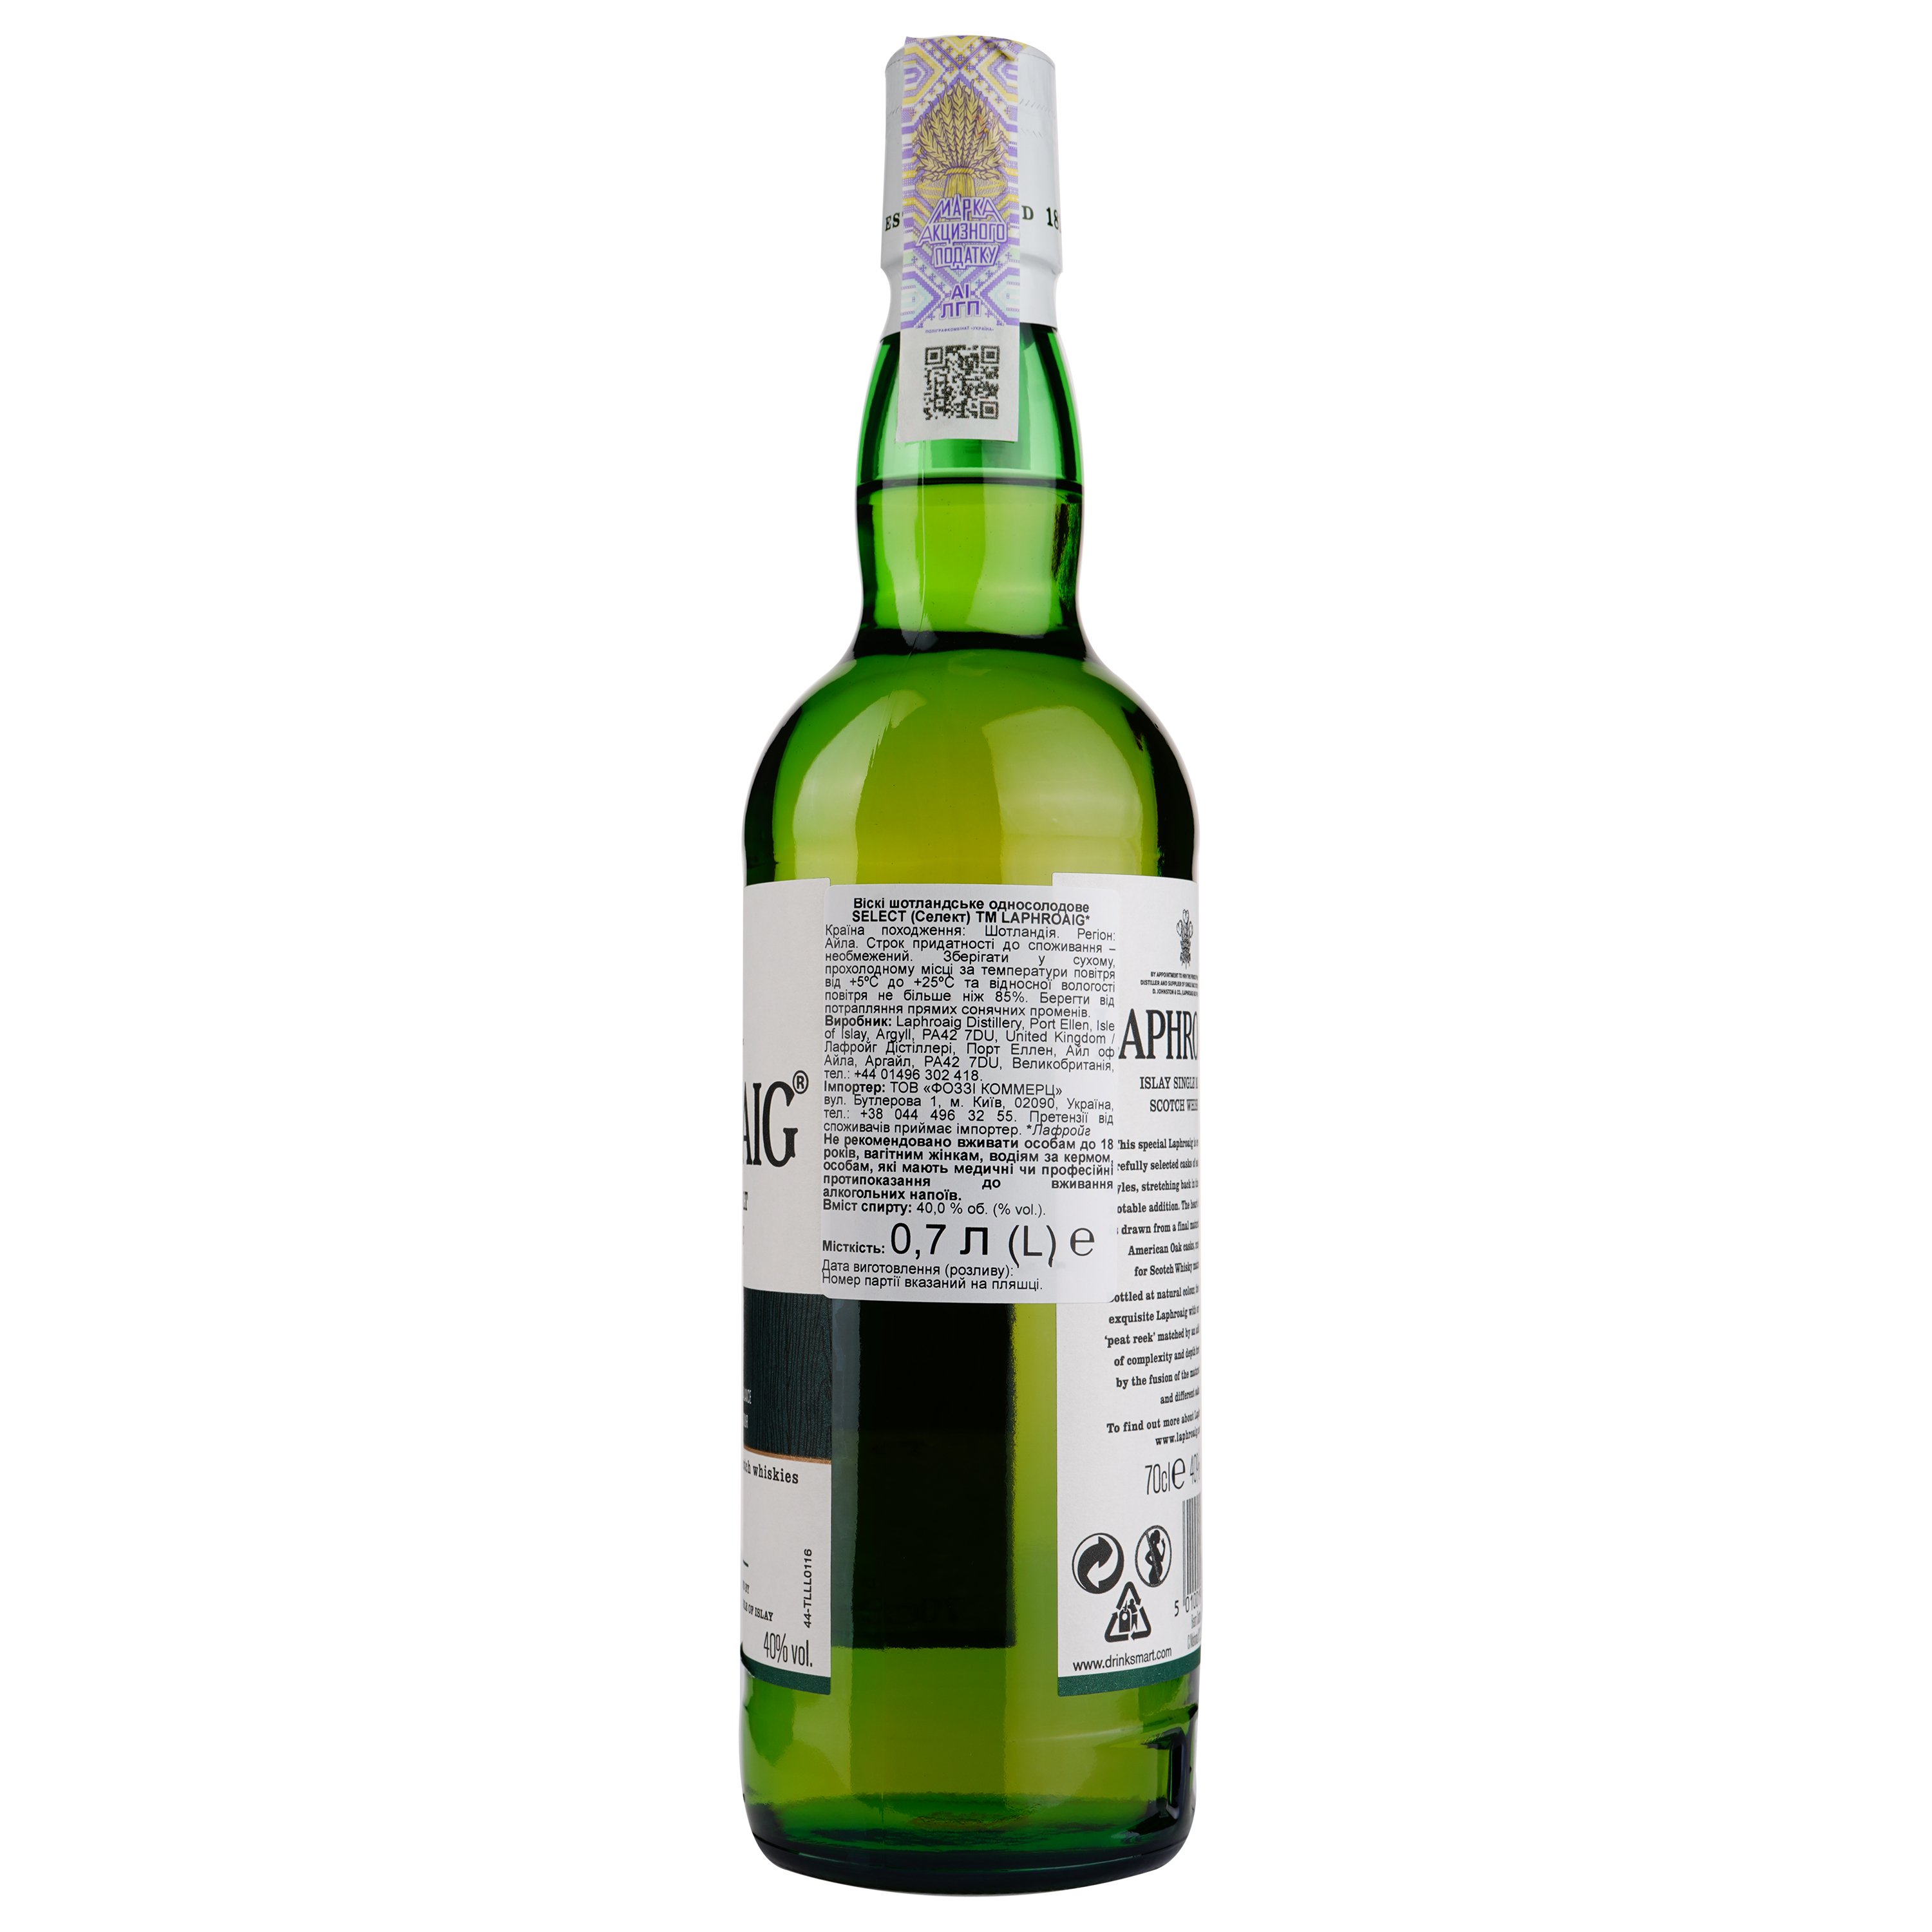 Виски Laphroaig Select Single Malt Scotch Whisky, в подарочной упаковке, 40%, 0,7 л - фото 3